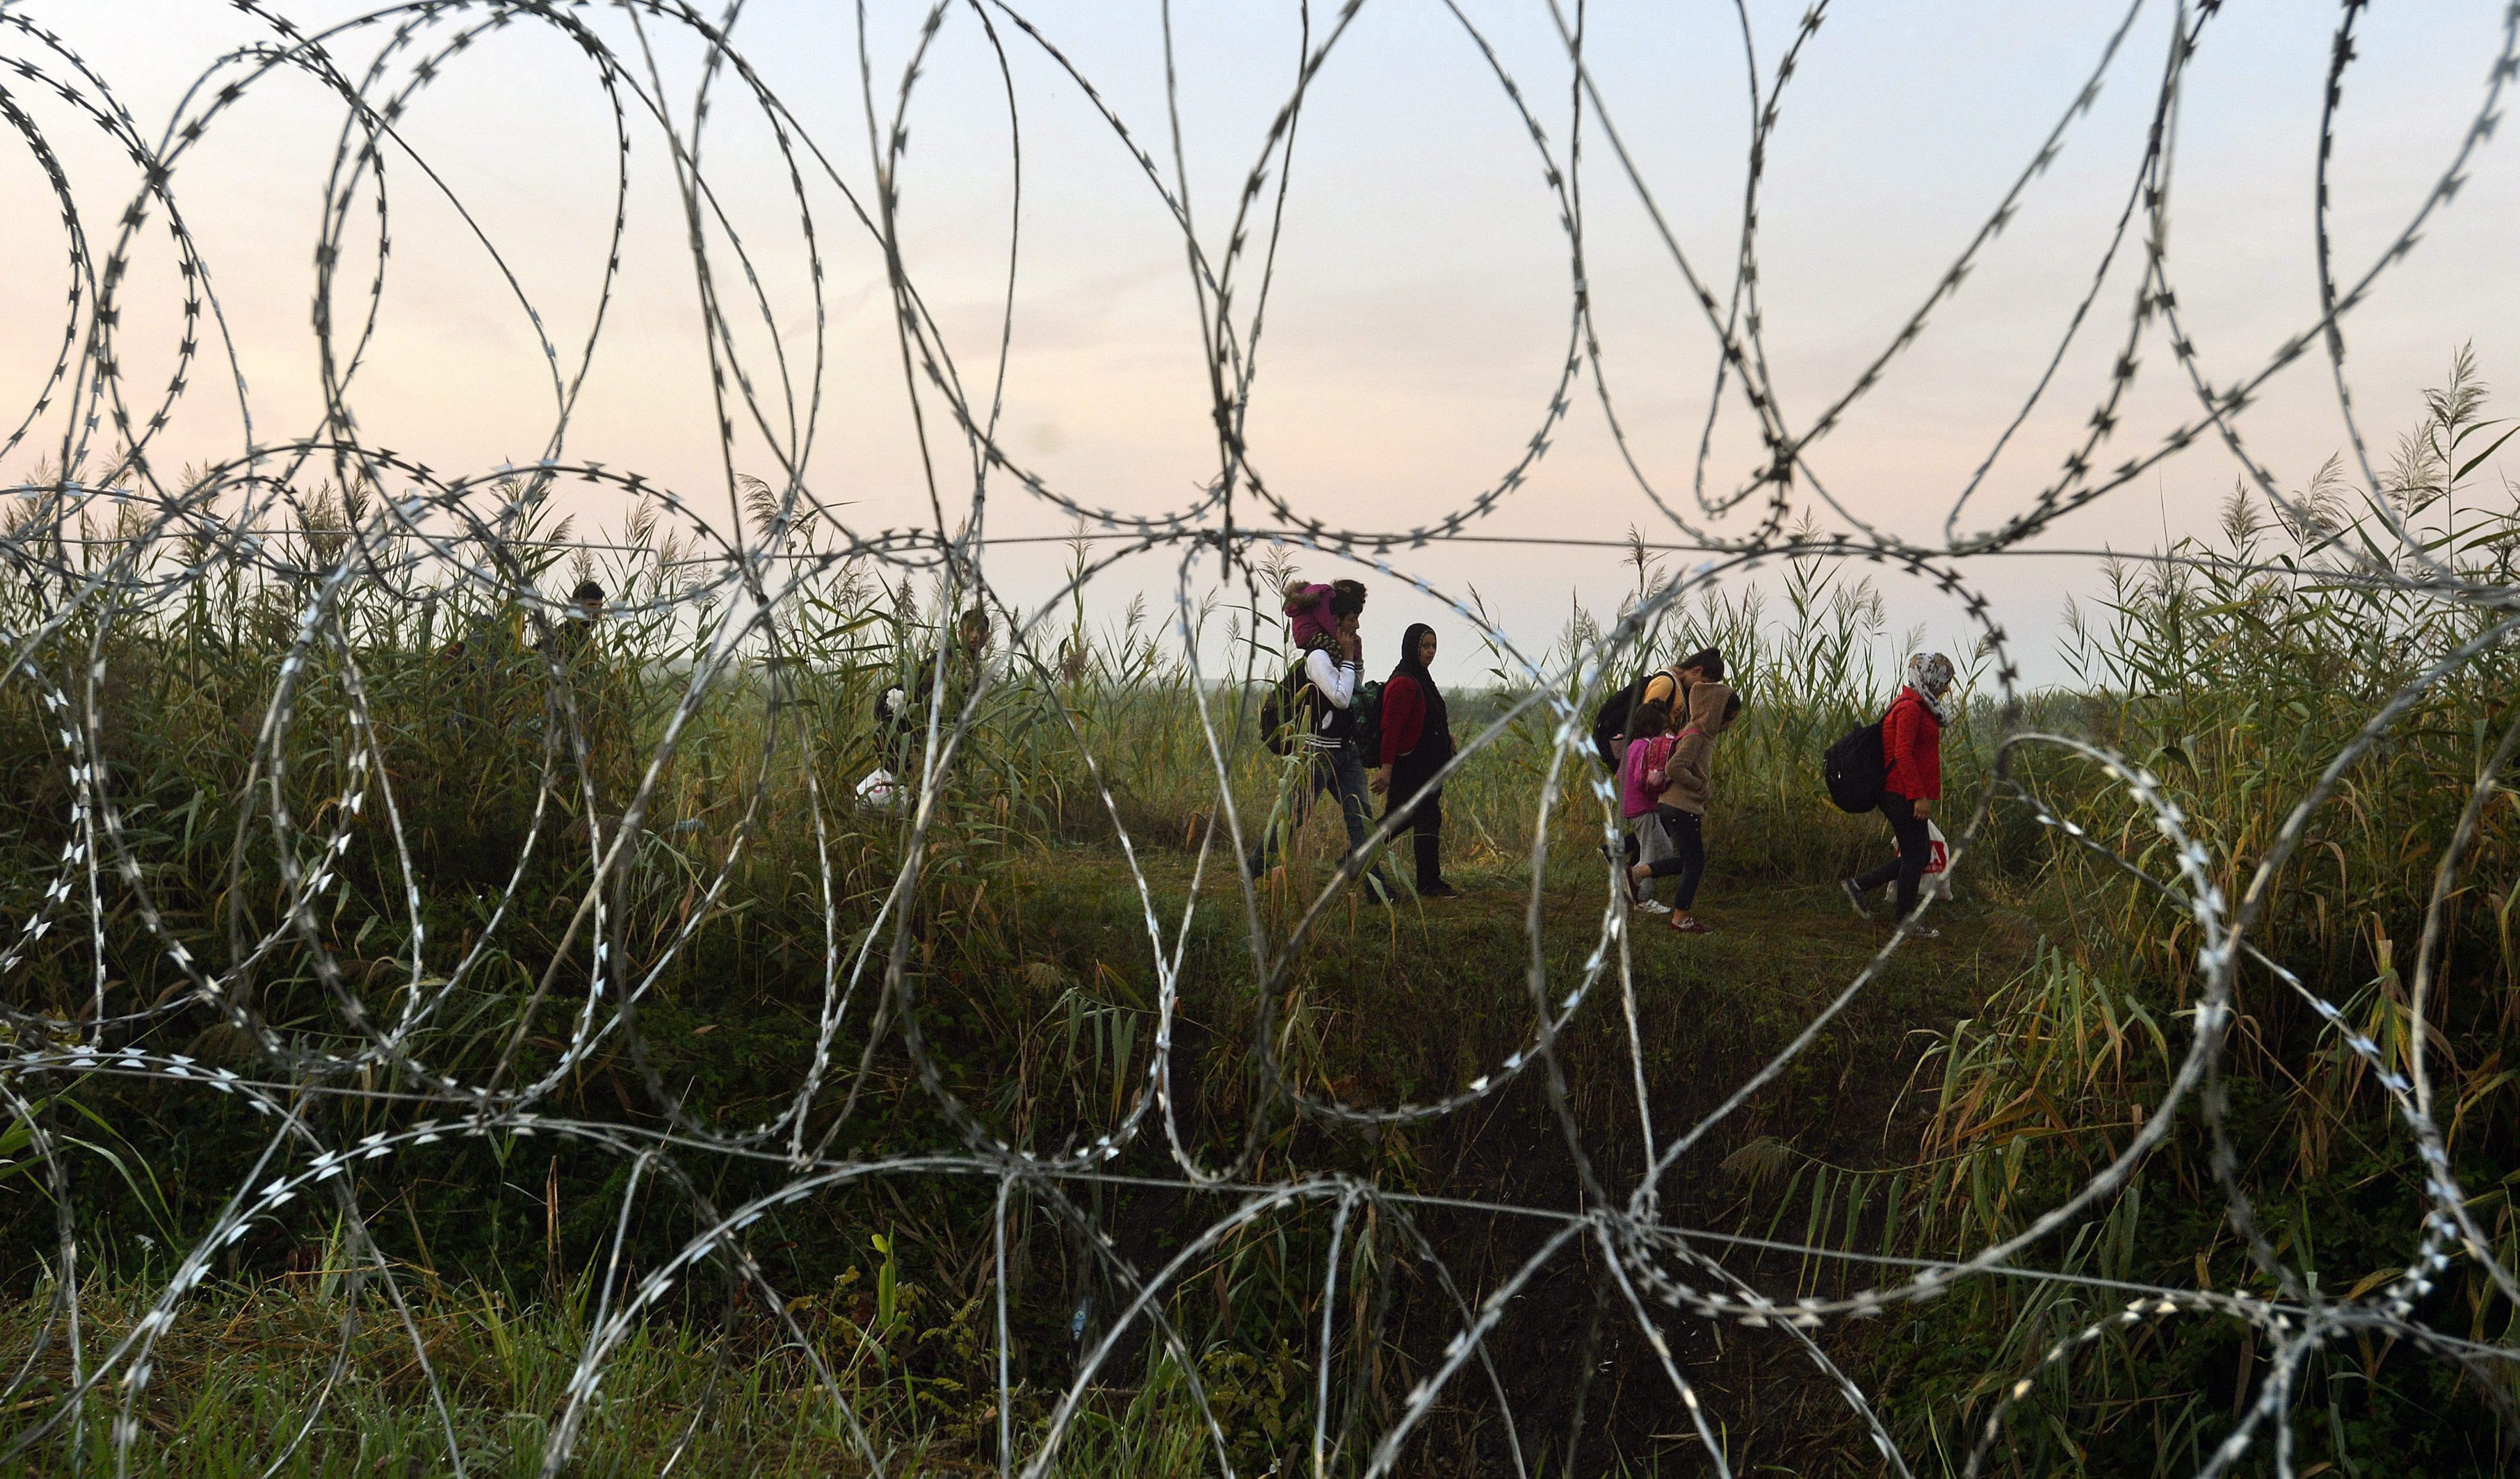 An der Grenze zwischen Ungarn und Serbien laufen 2015 Flüchtlinge, die auf dem Weg in die EU sind. | picture alliance / dpa